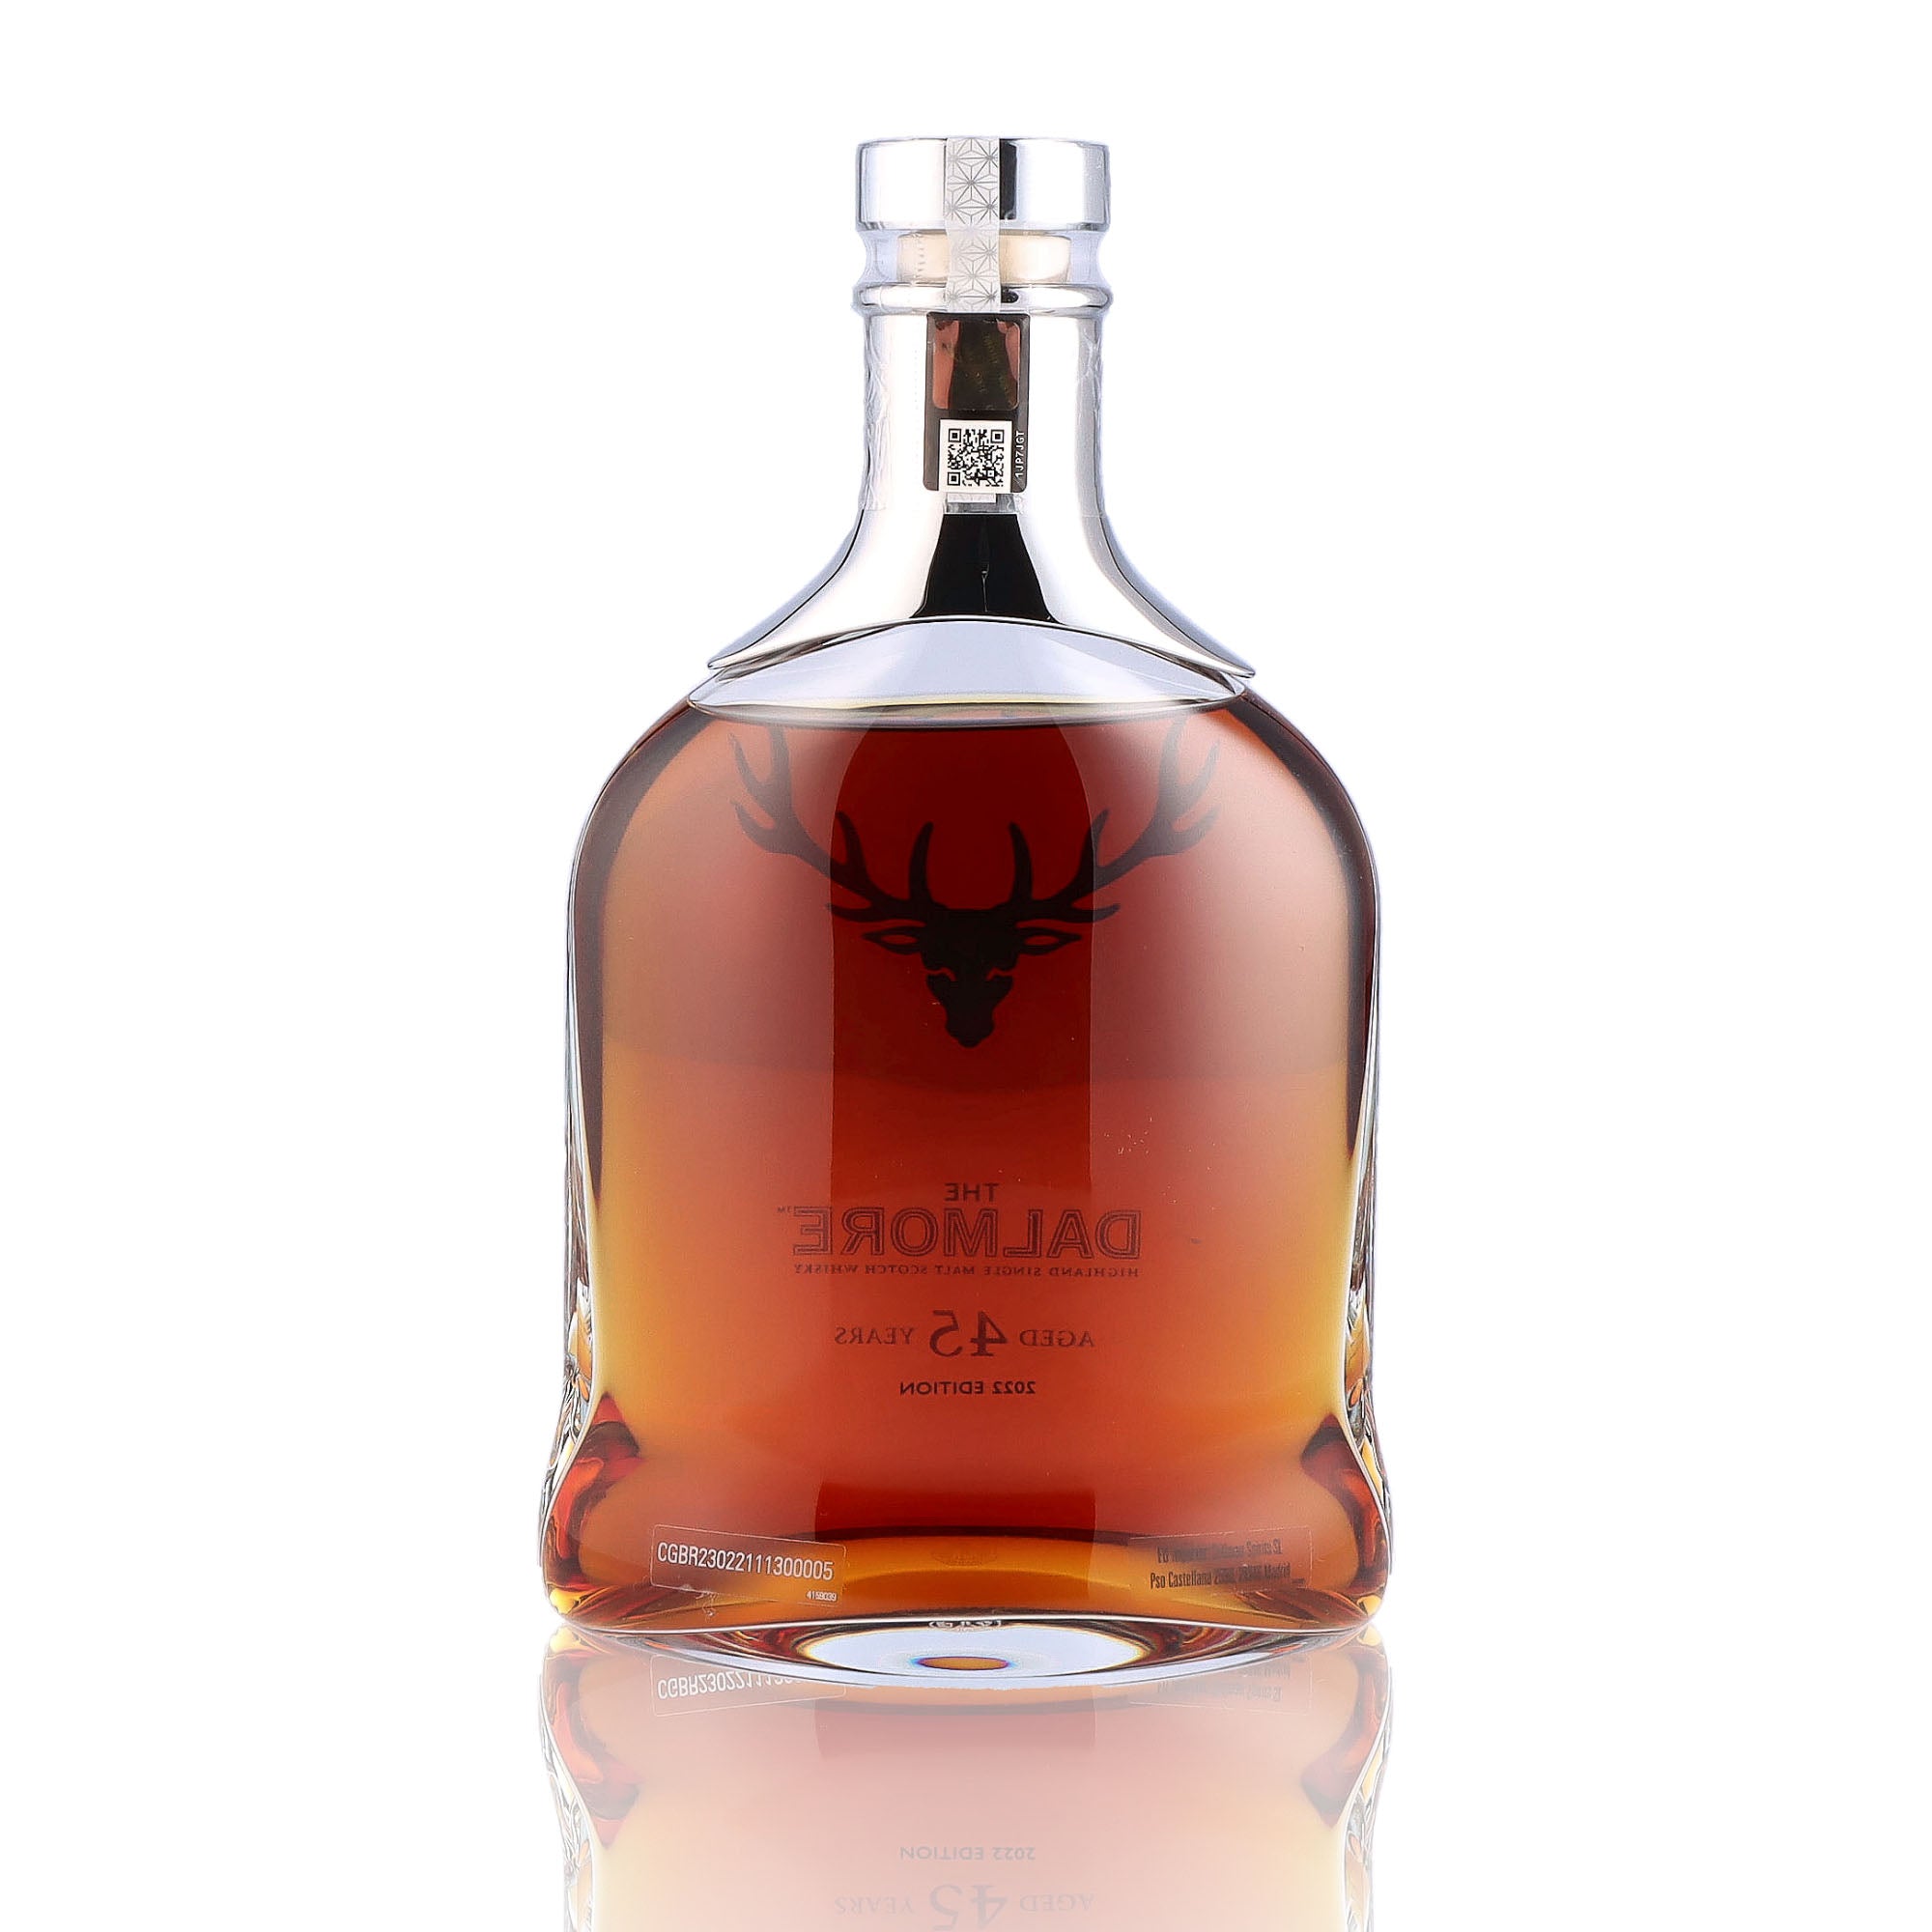 Une bouteille de Scotch Whisky Single Malt de la marque Dalmore, 45 as d'âge.